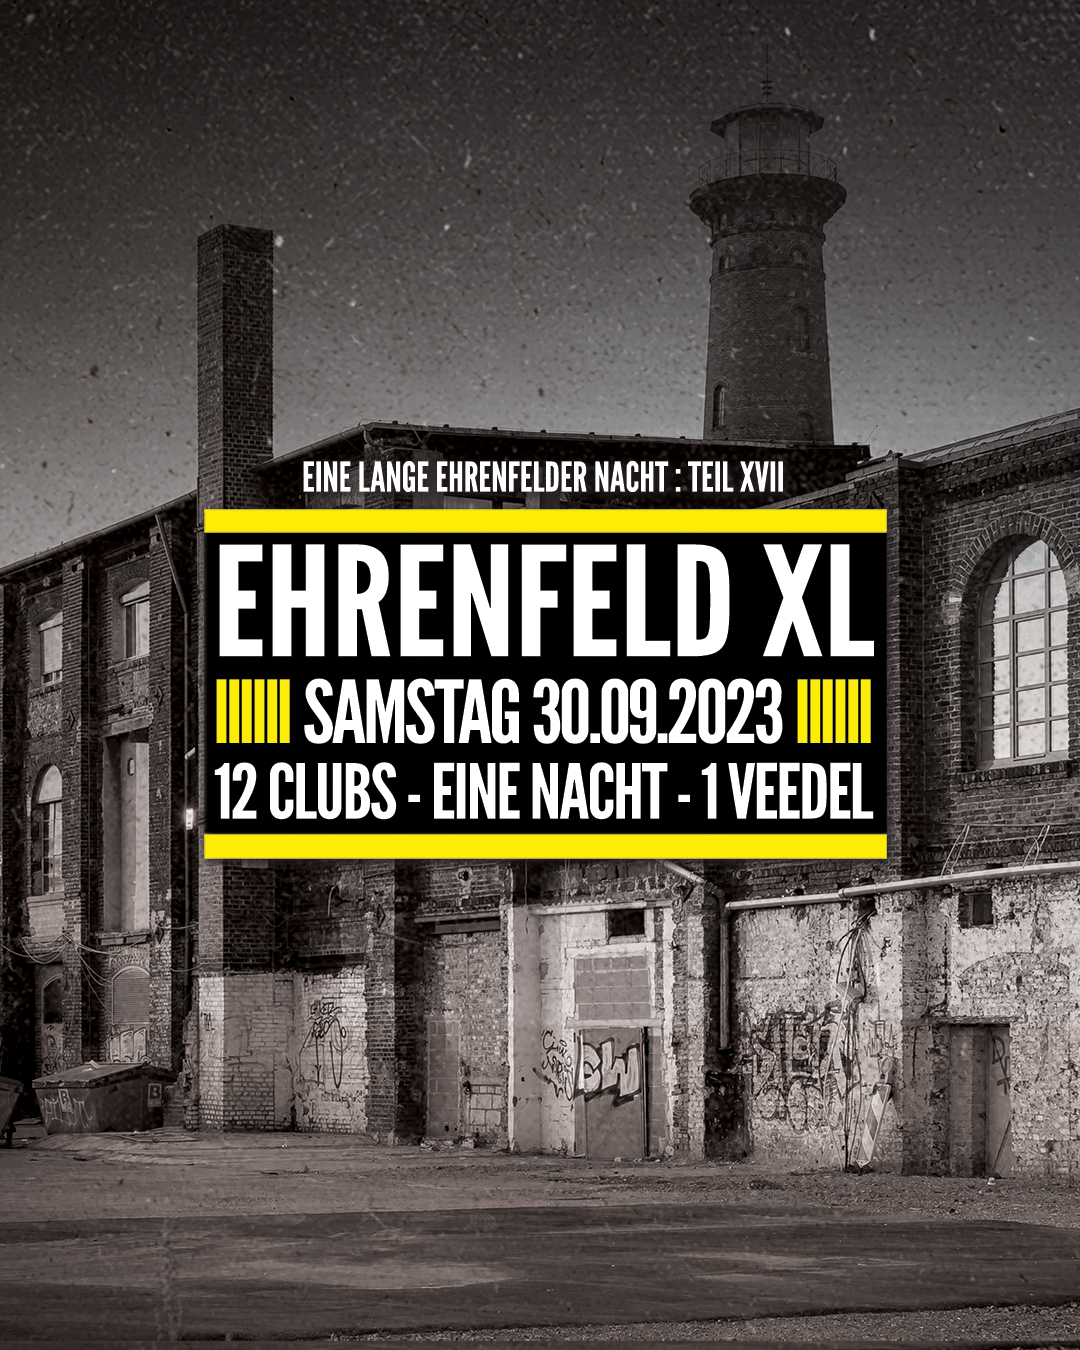 Ehrenfeld XL - 12 Clubs, eine Nacht, ein Veedel - Página frontal